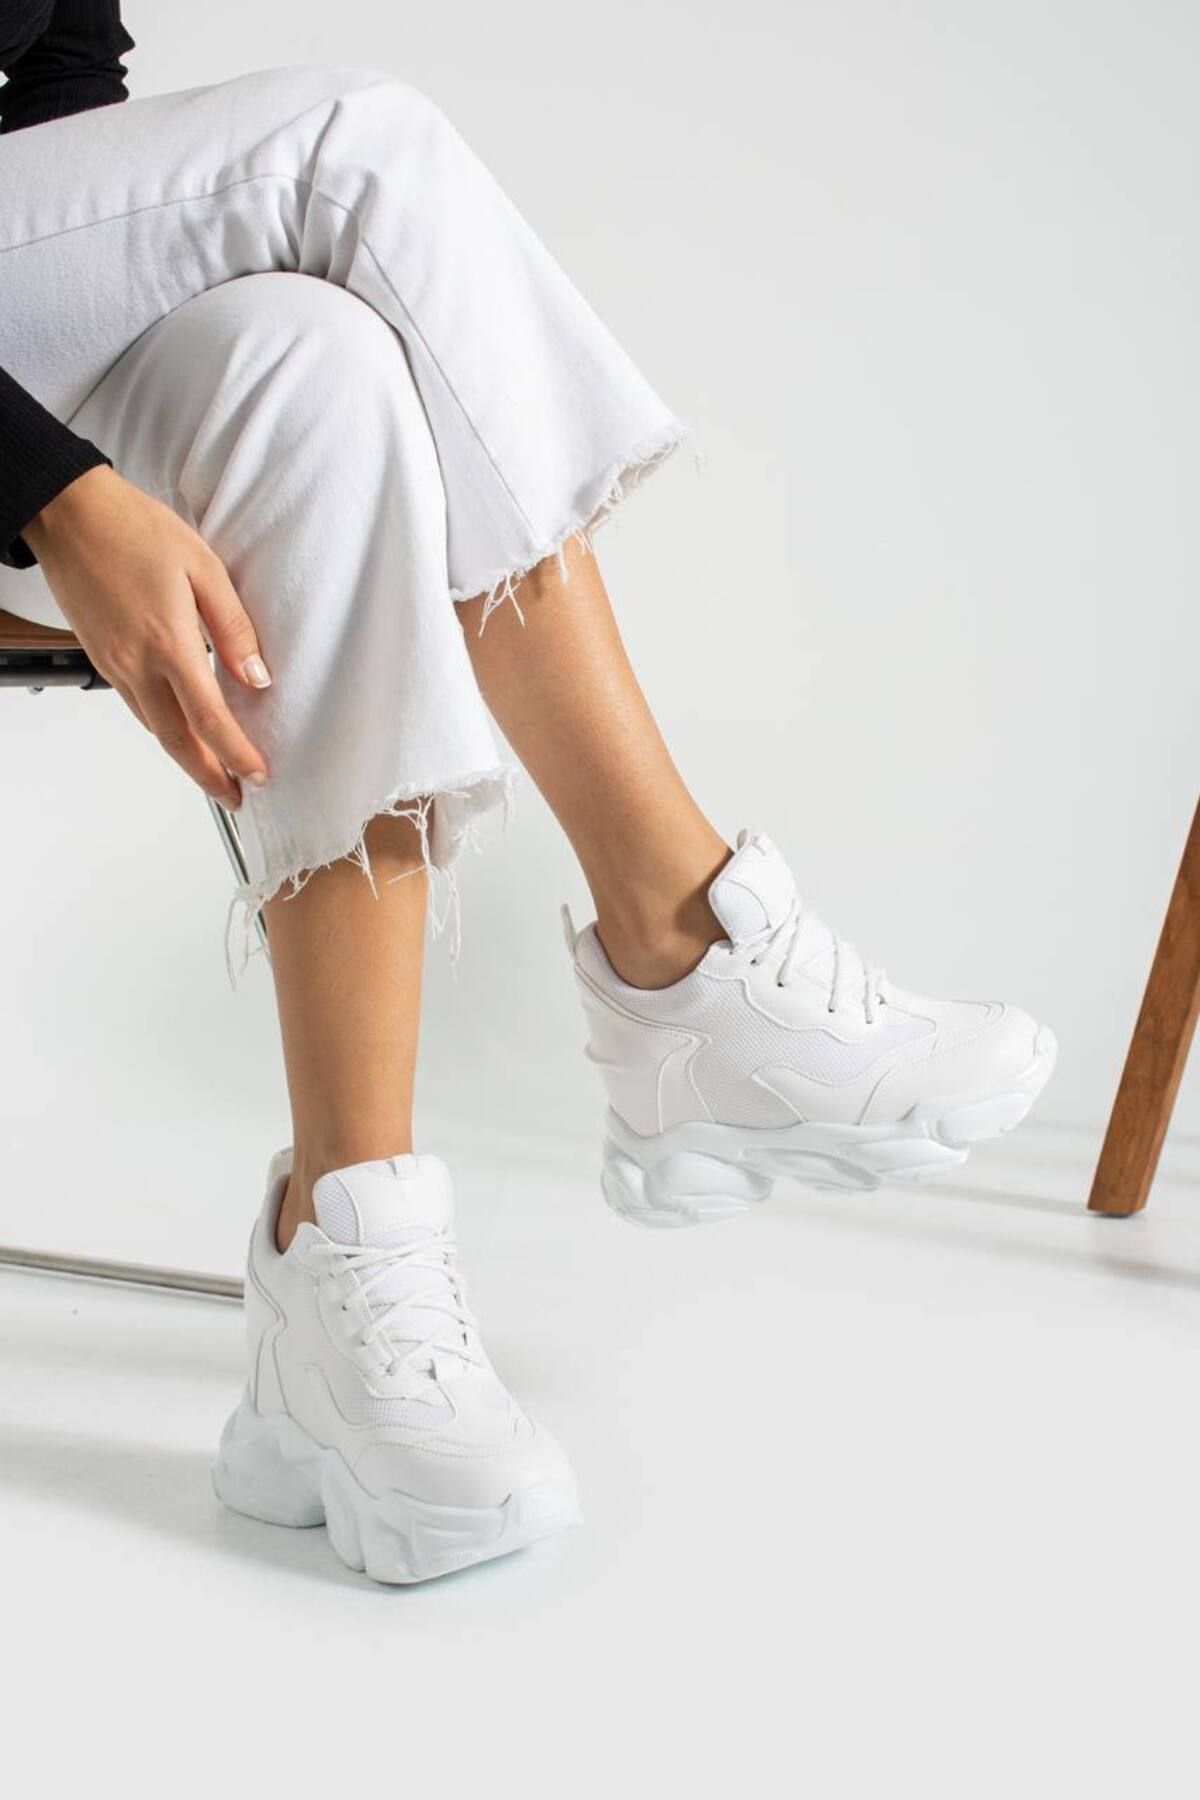 Leyna Kadın Stiva Beyaz Yüksek Gizli Dolgu Topuklu Spor Ayakkabı